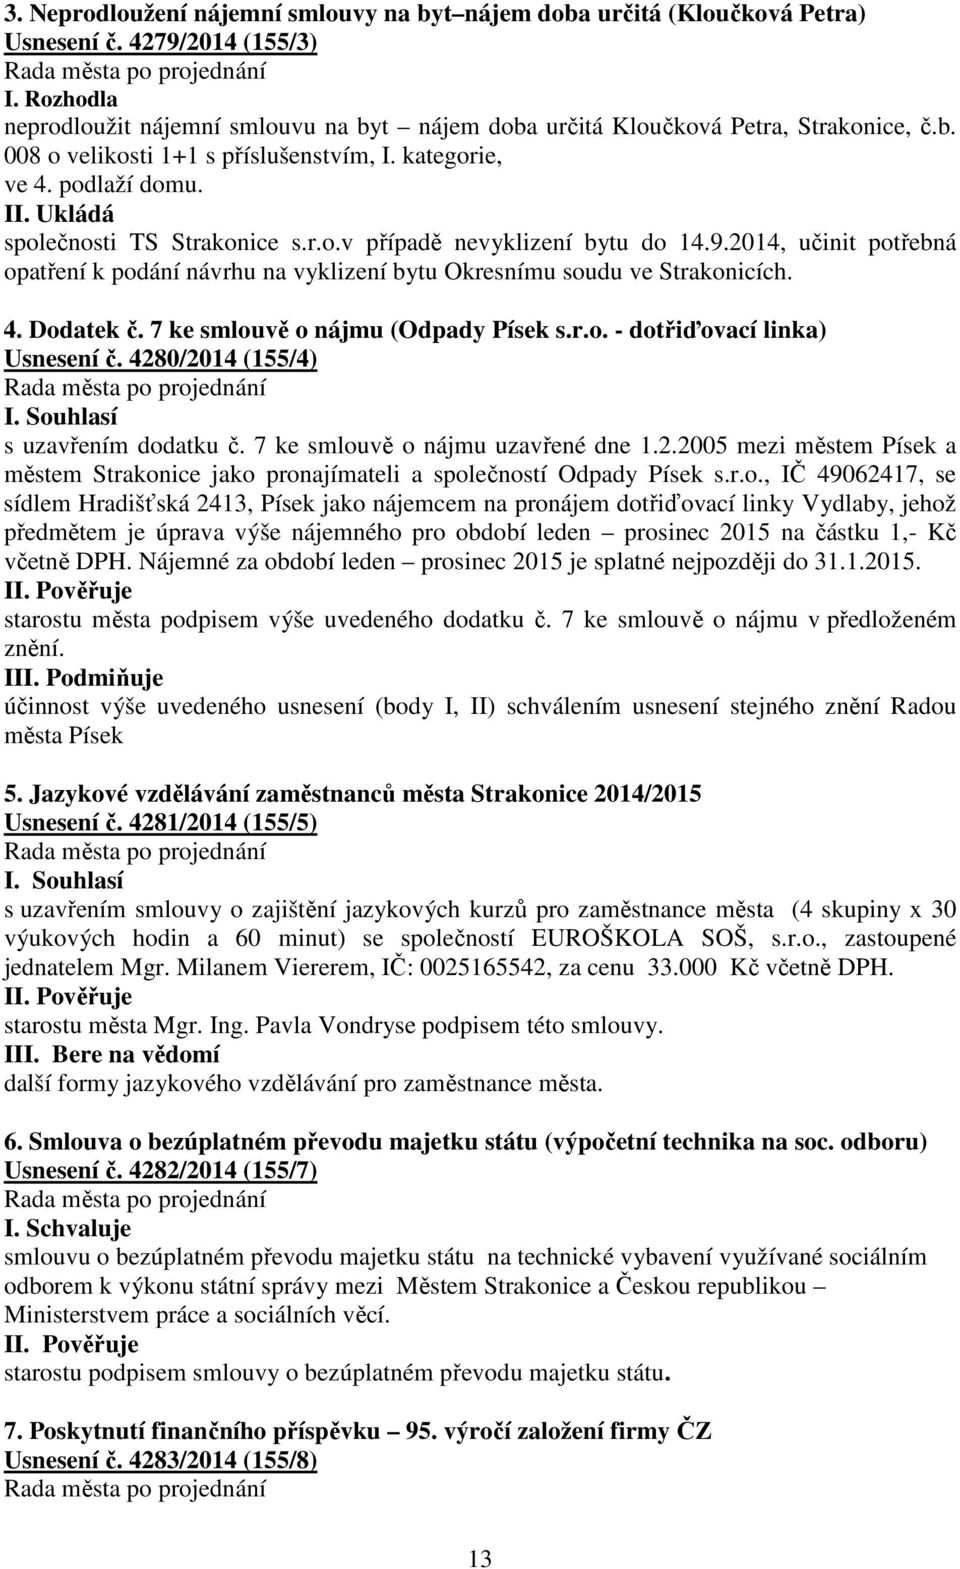 Ukládá společnosti TS Strakonice s.r.o.v případě nevyklizení bytu do 14.9.2014, učinit potřebná opatření k podání návrhu na vyklizení bytu Okresnímu soudu ve Strakonicích. 4. Dodatek č.